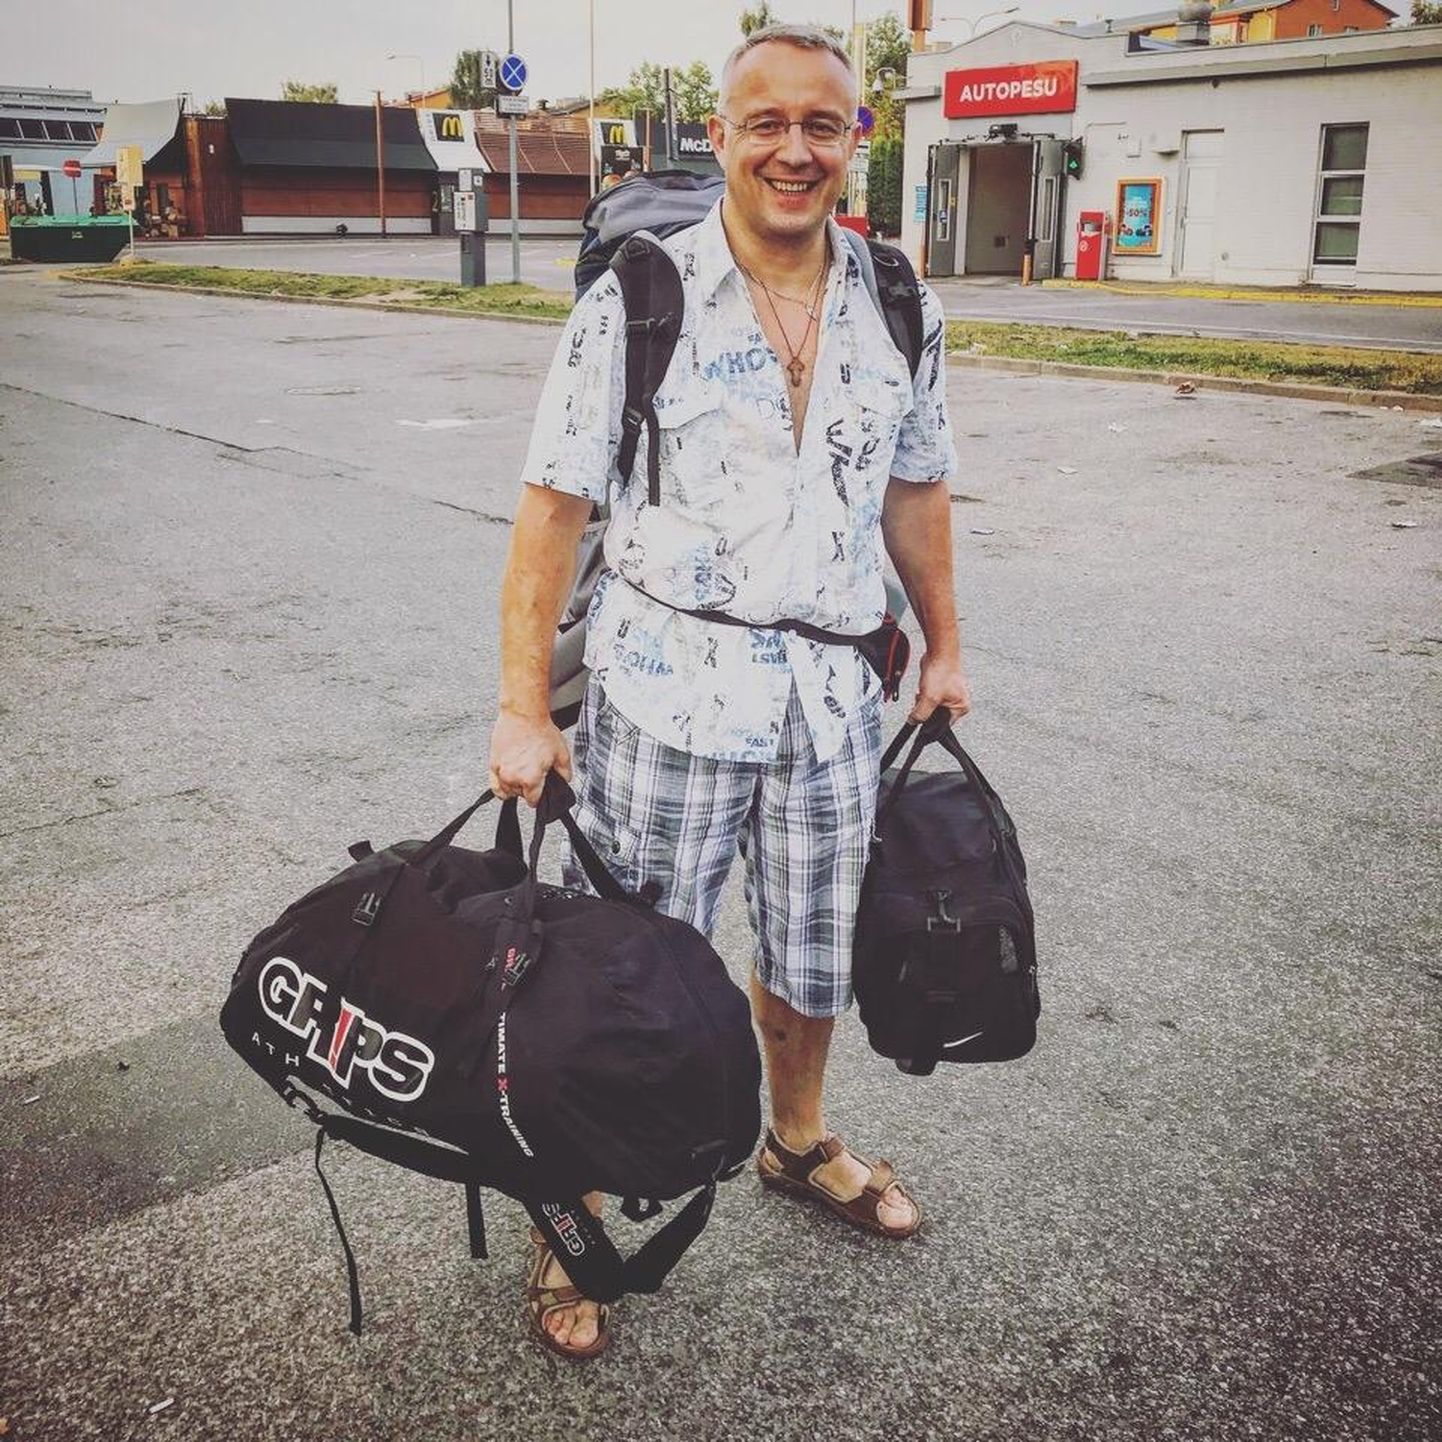 Михаил Петров стряхнул эстонскую пыль с ног 22 июля сразу после освобождения из Тартуской тюрьмы. С Тартуского автовокзала он отправился на рейс до Германии.